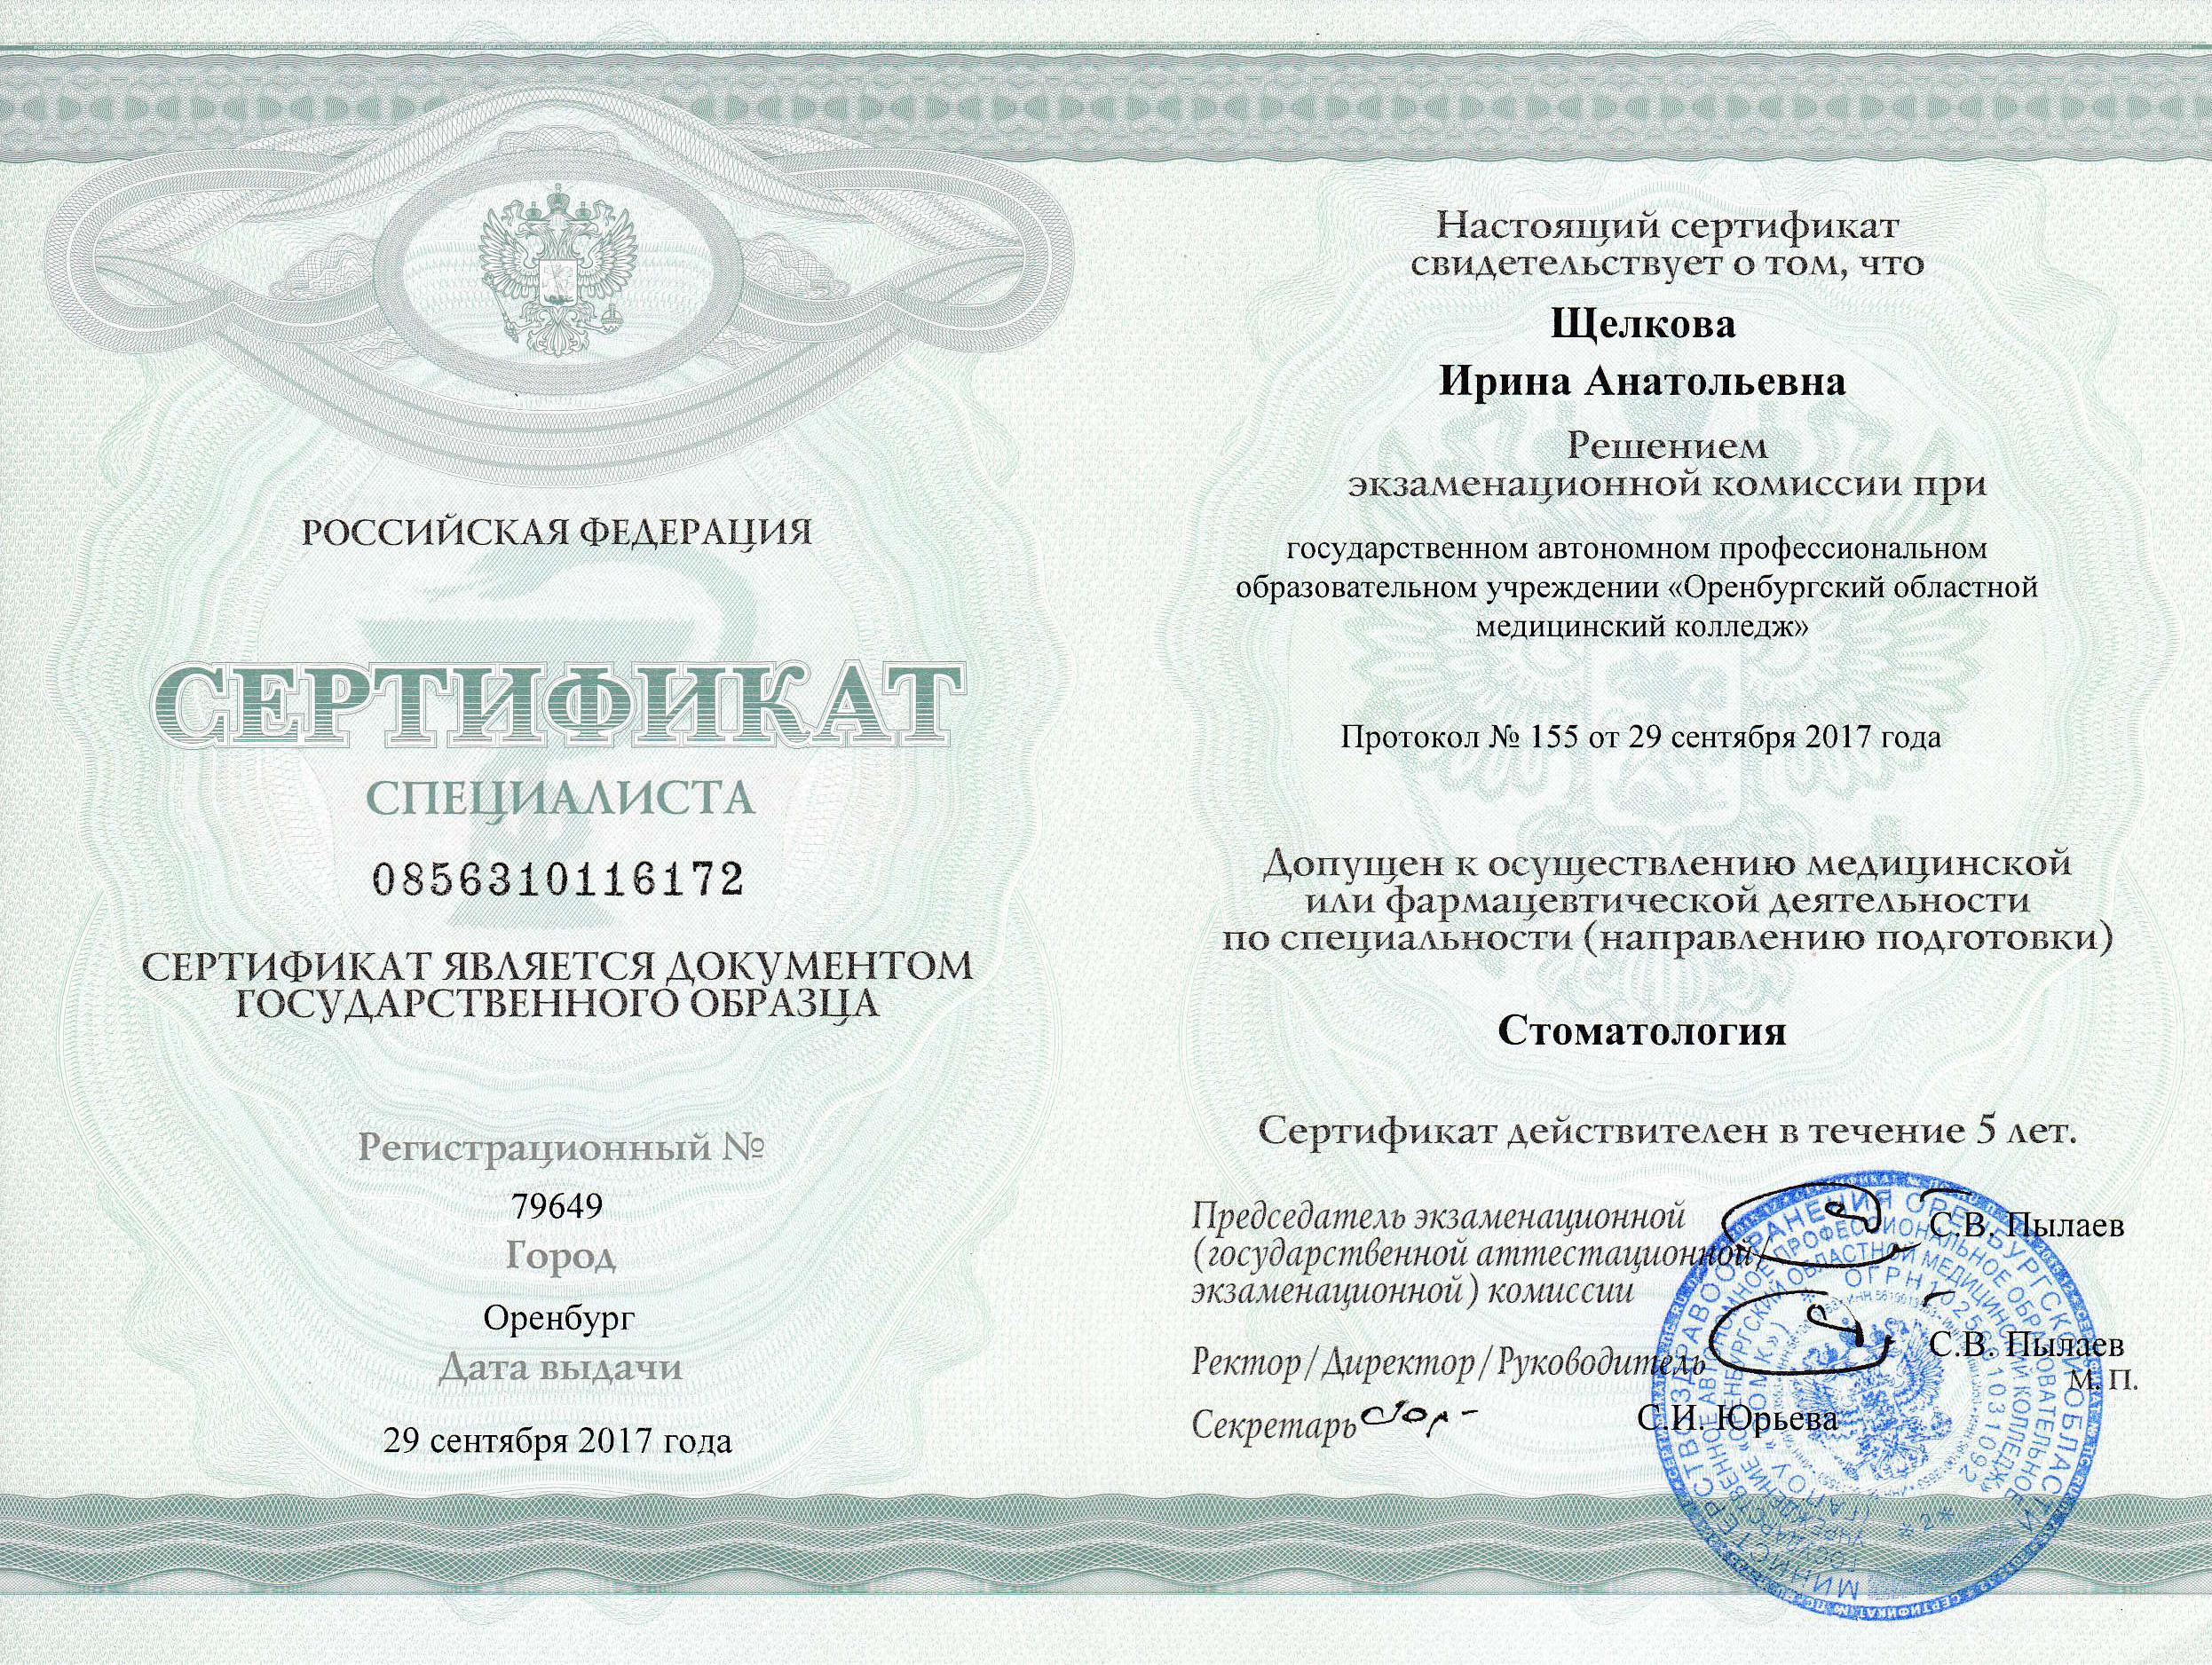 Сертификат - Щелкова Ирина